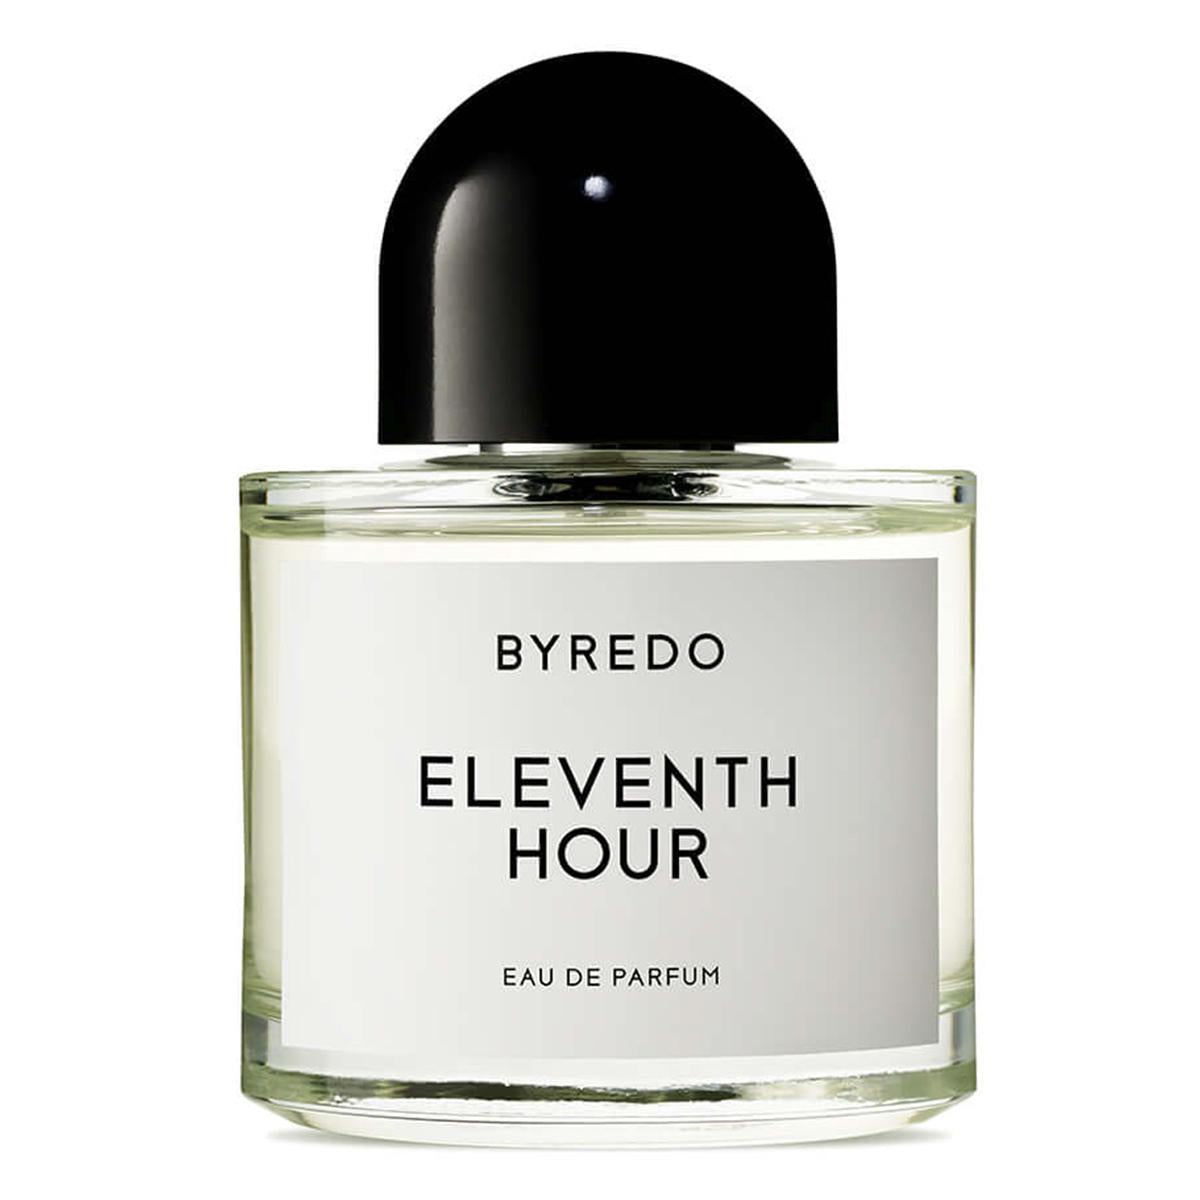 Primary image of Eleventh Hour Eau de Parfum